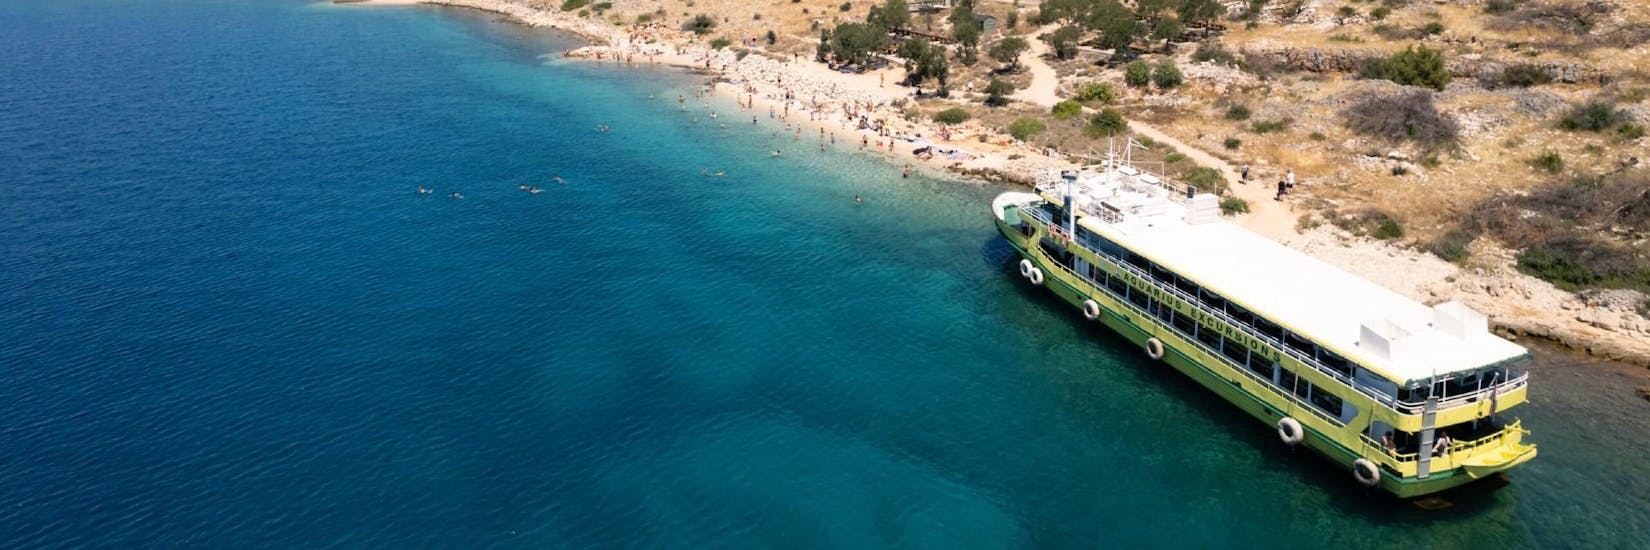 Das Boot von Aquarius Excursions Zadar vor einem wunderschönen Strand während ihrer Bootstour.